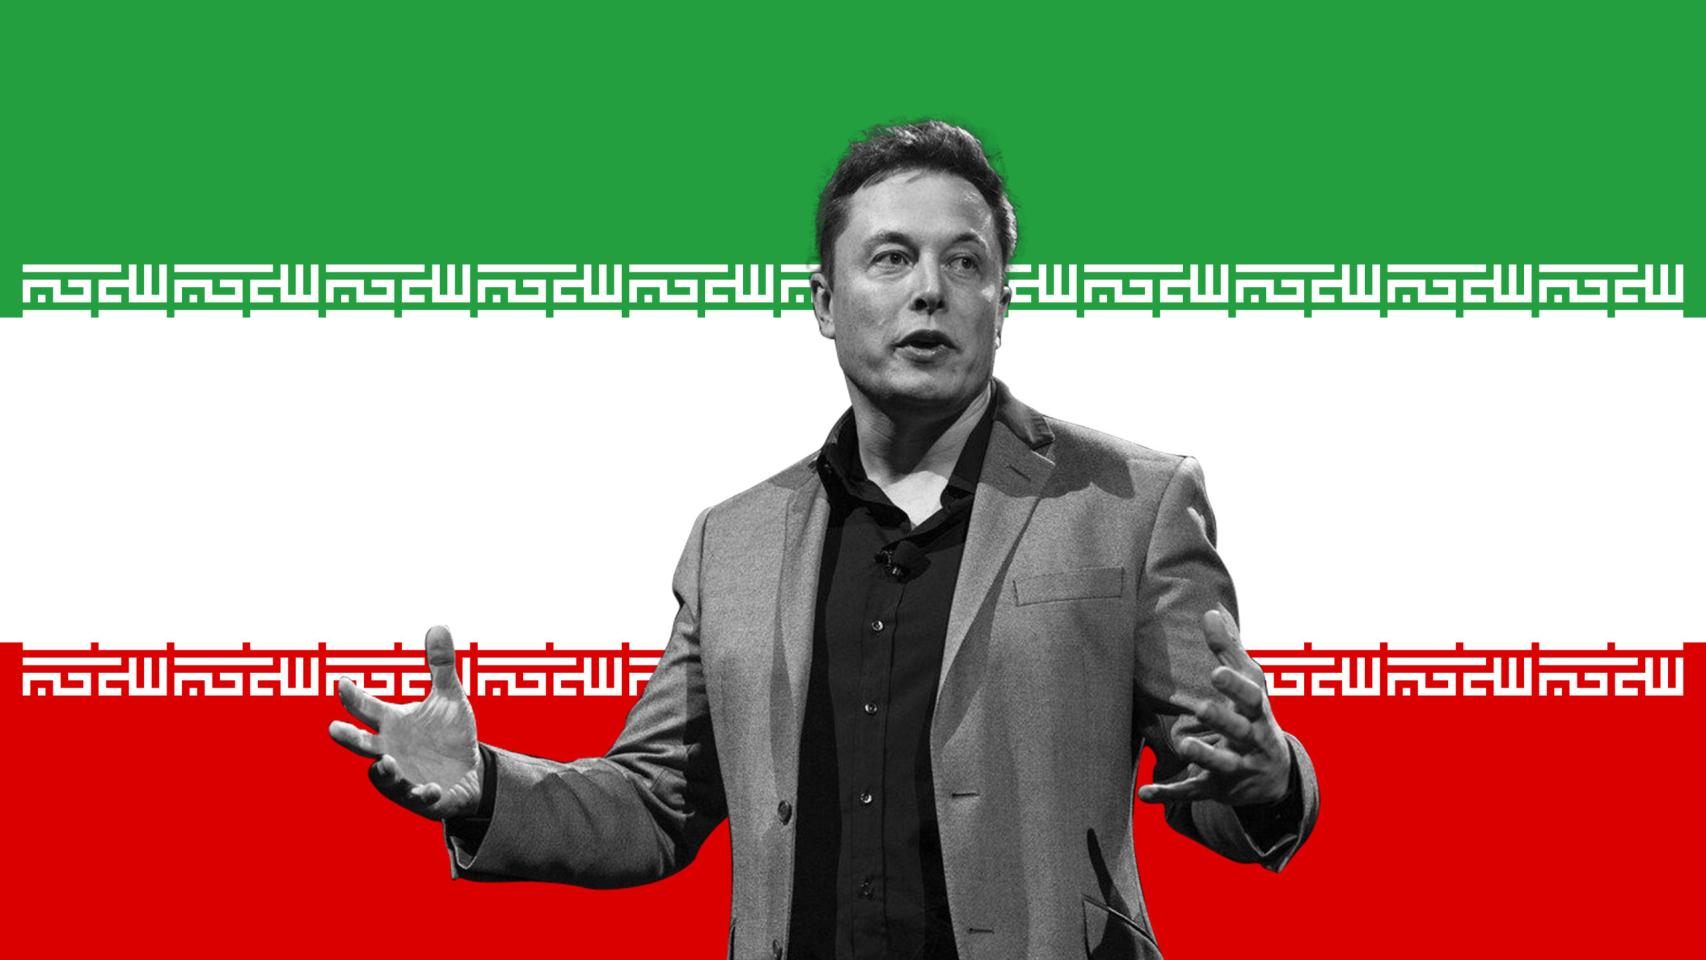 Fotomontaje con una foto de Musk y la bandera de Irán.